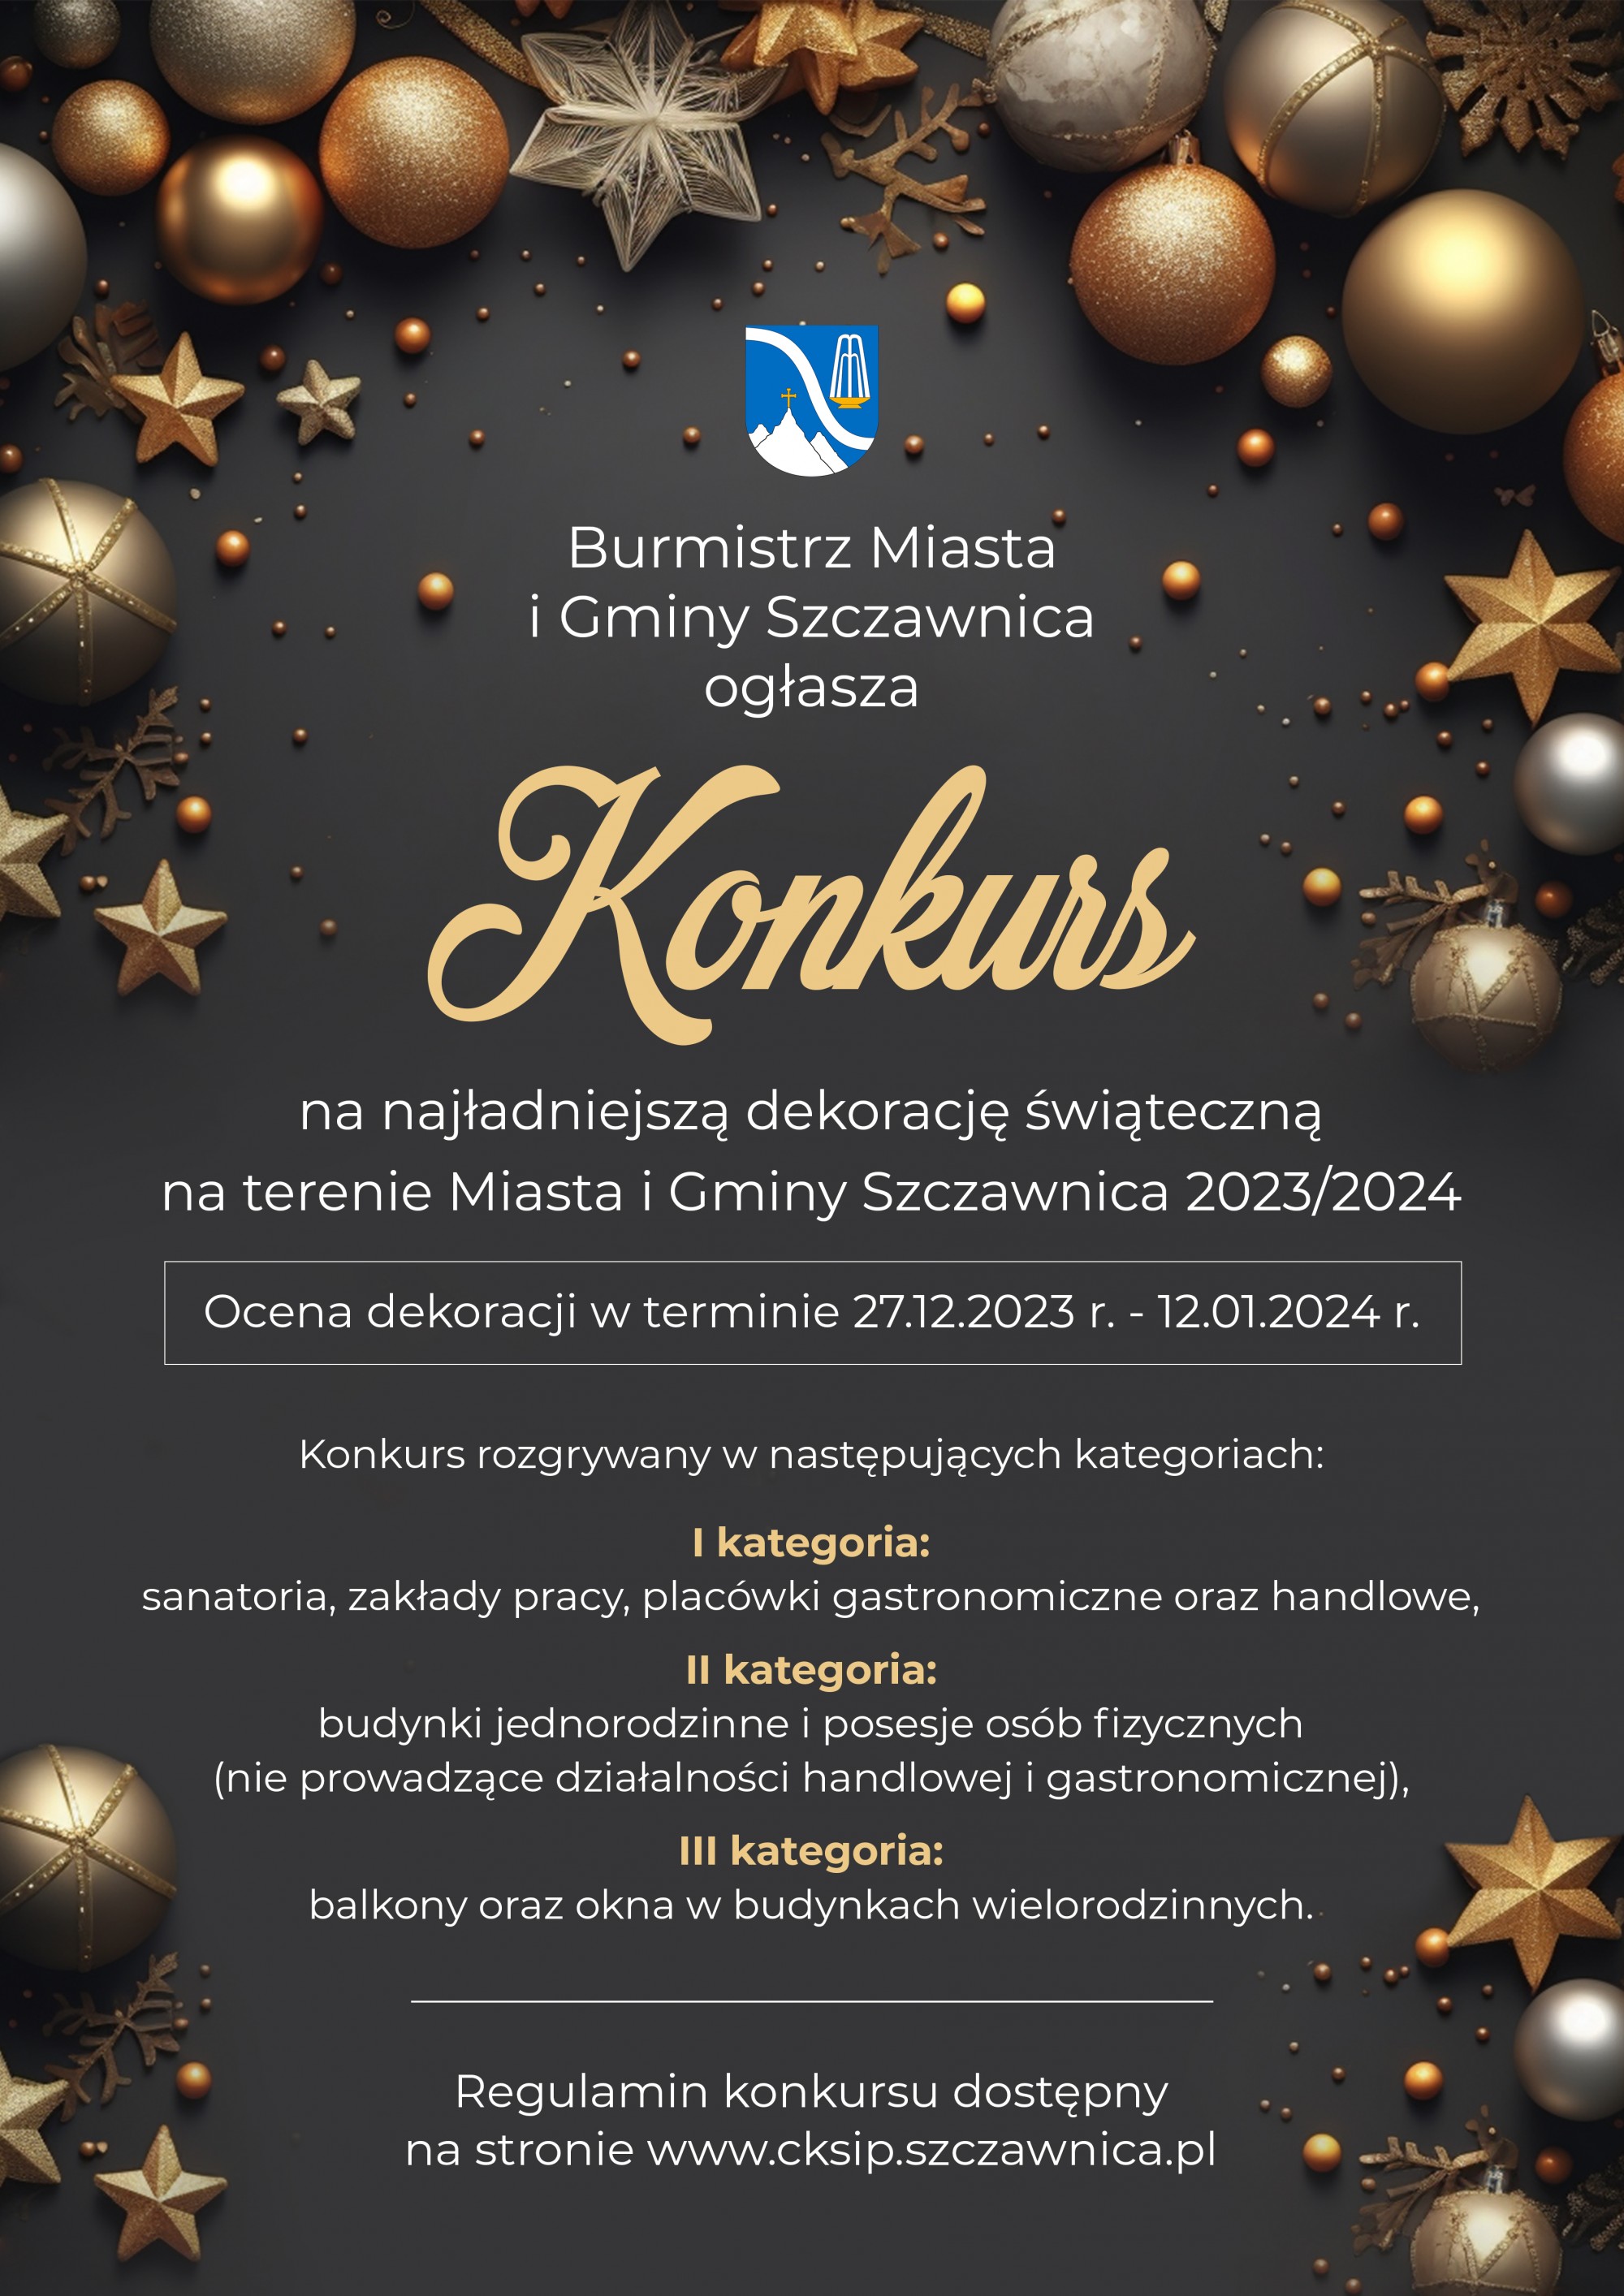 Konkurs na najładniejszą dekorację świąteczną na terenie Miasta i Gminy Szczawnica 2023/2024